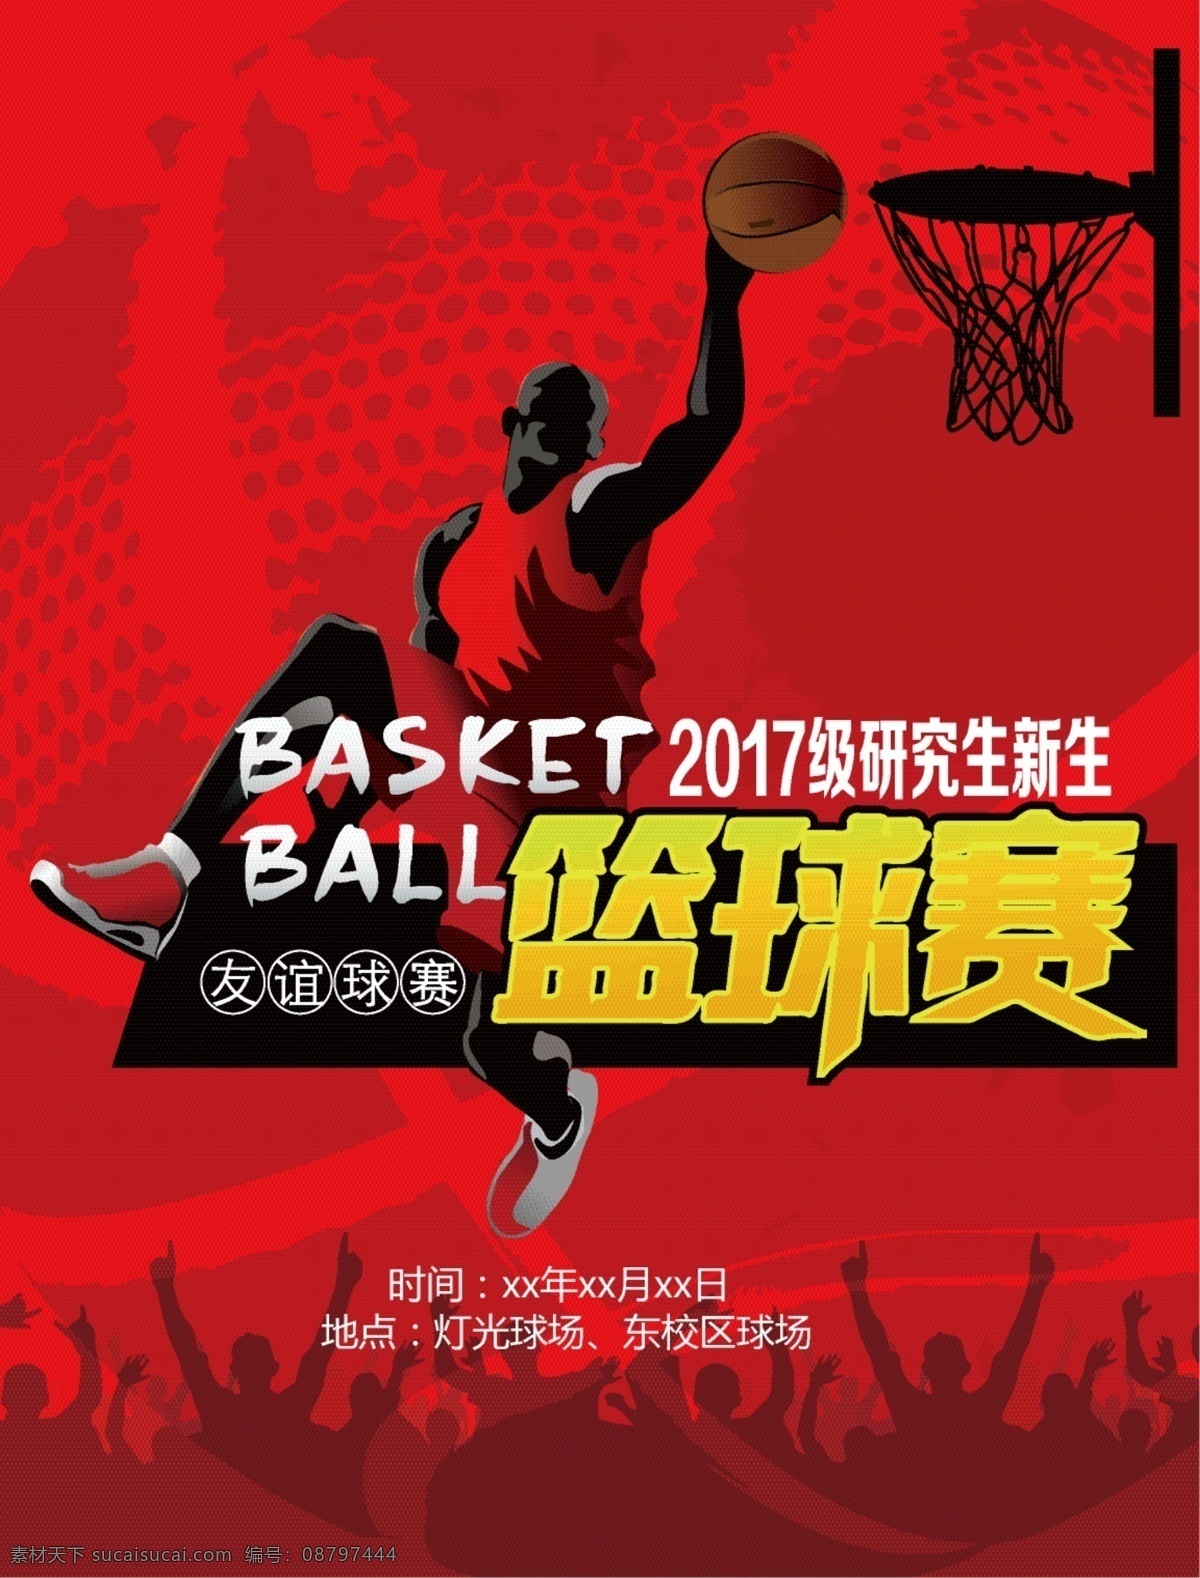 炫 酷 篮球 比赛 活动 体育 体育展板 运动海报 篮球海报 篮球展架 篮球展板 篮球运动 篮球赛 篮球比赛 运动会 体育运动会 篮球运动会 体育运动展板